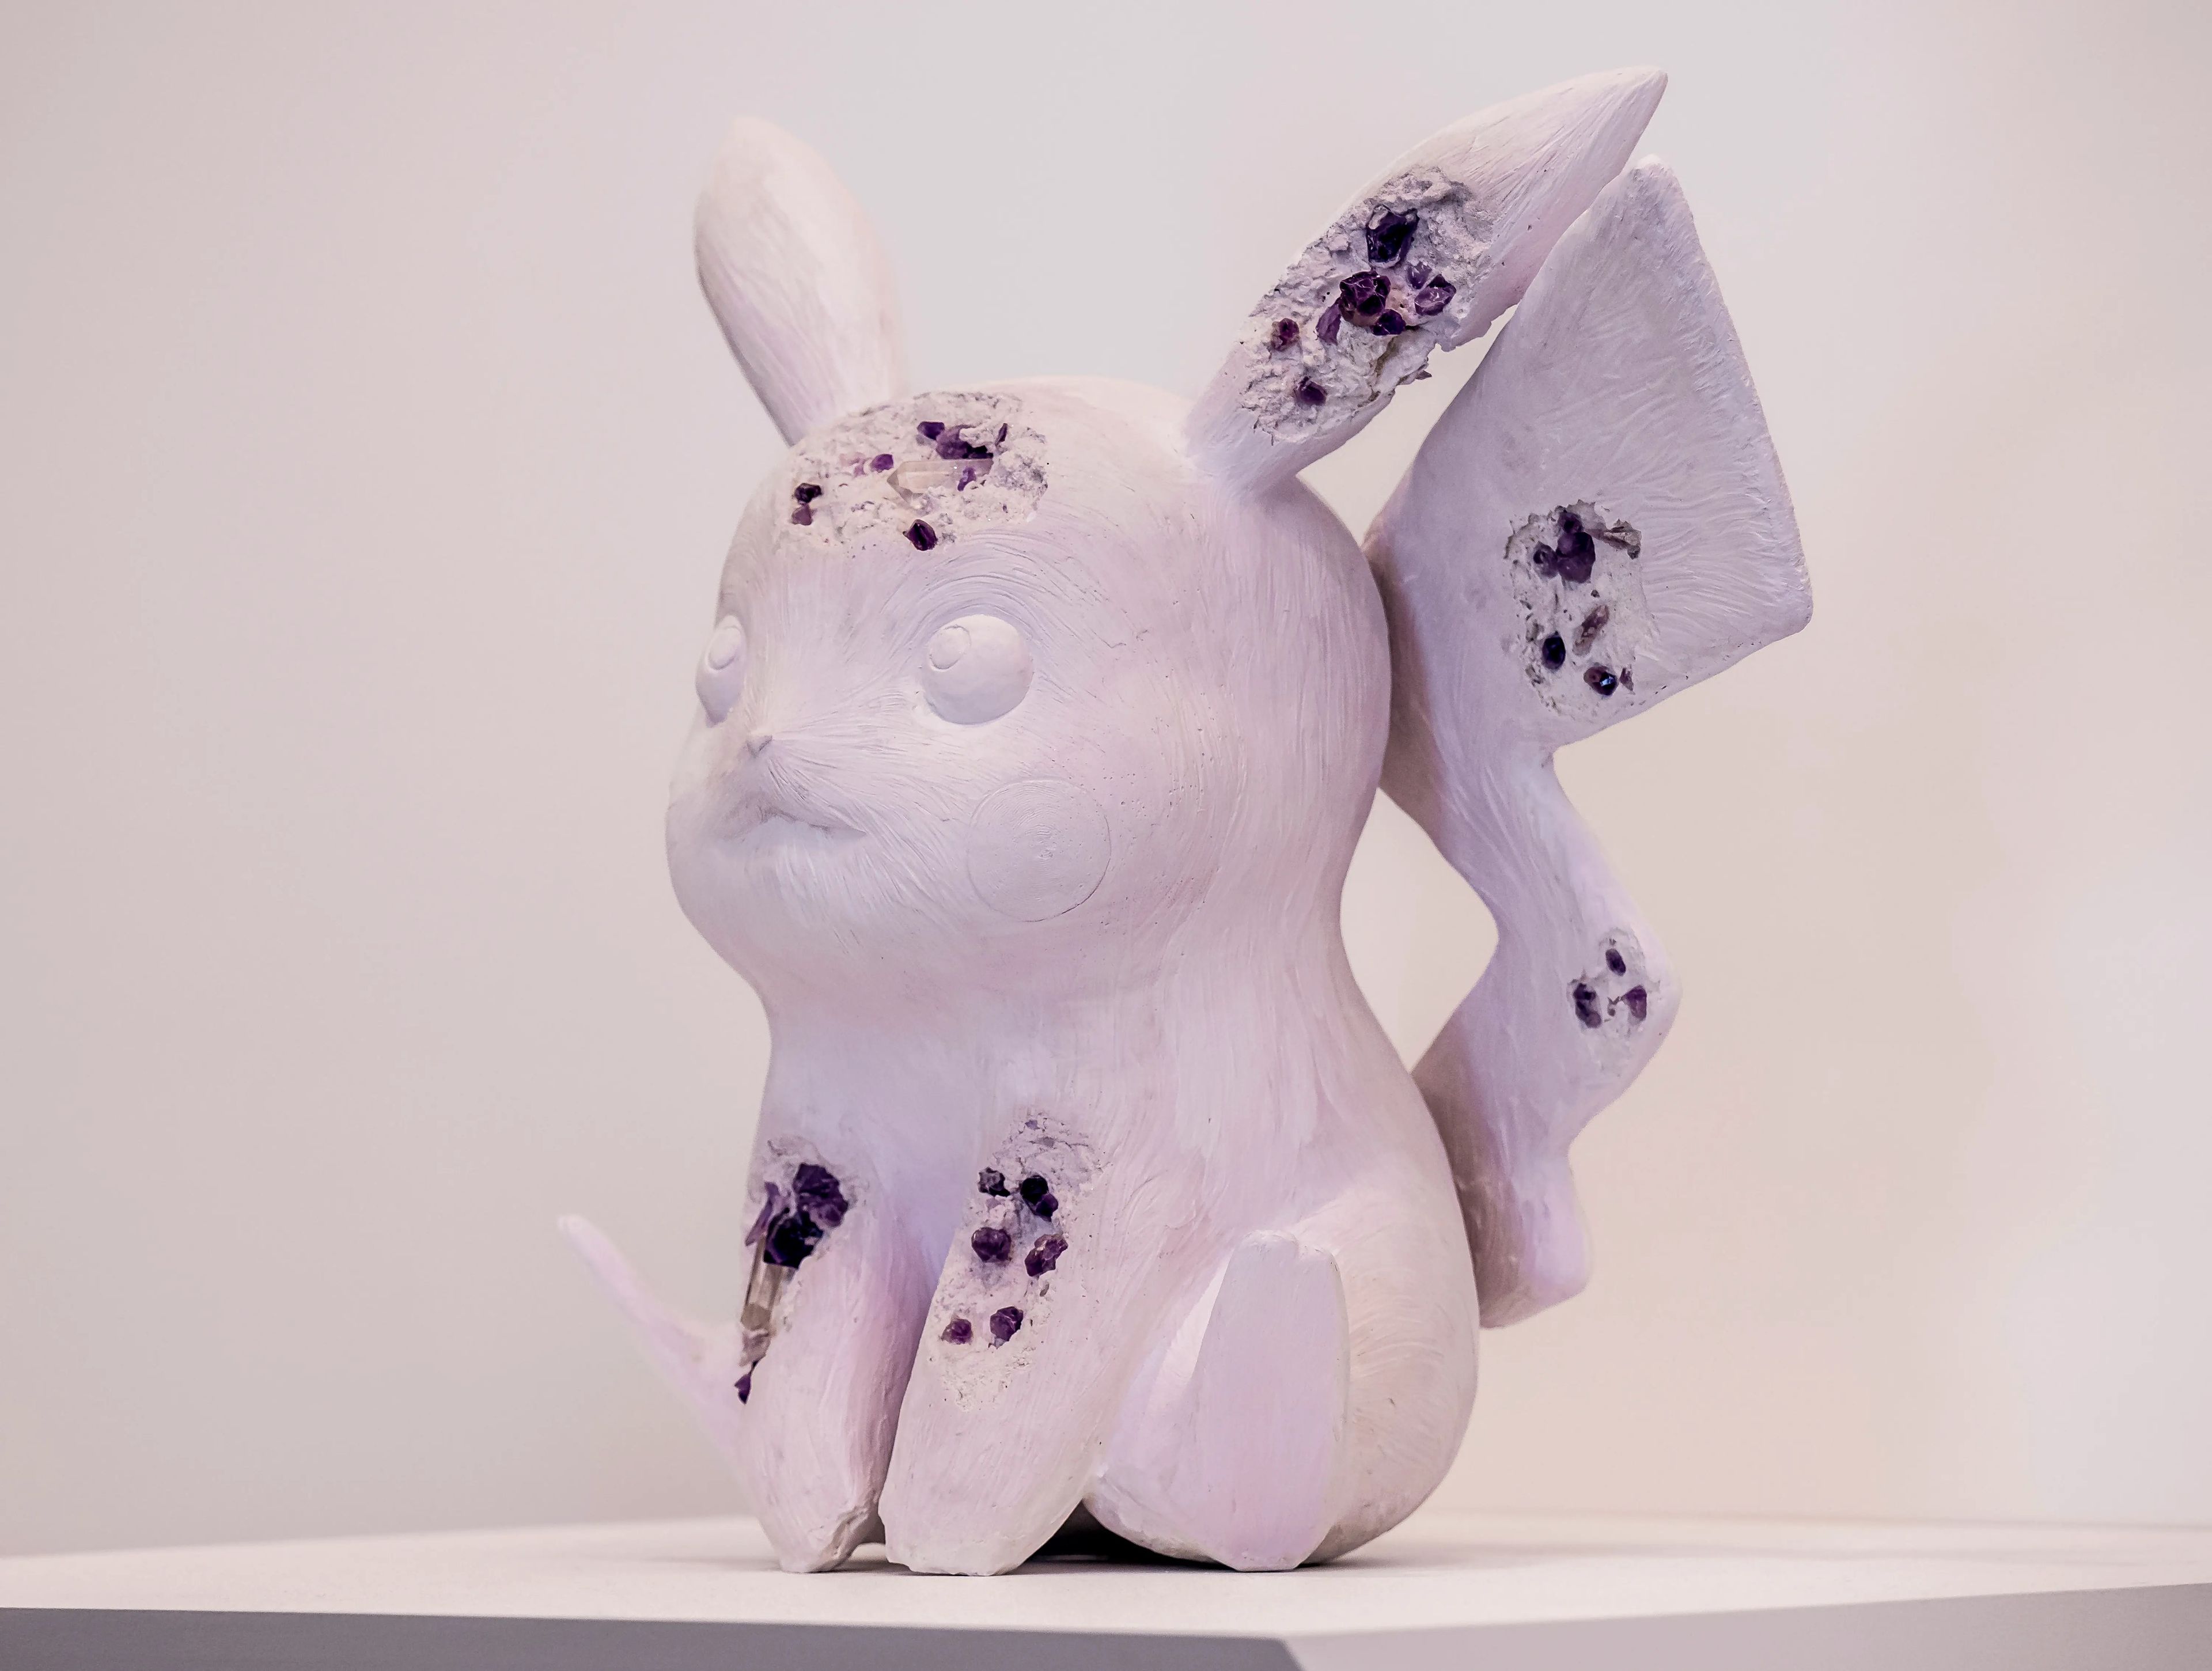 Arsham presentó esculturas de Pokémon en una exposición de arte de 2022 en Japón.